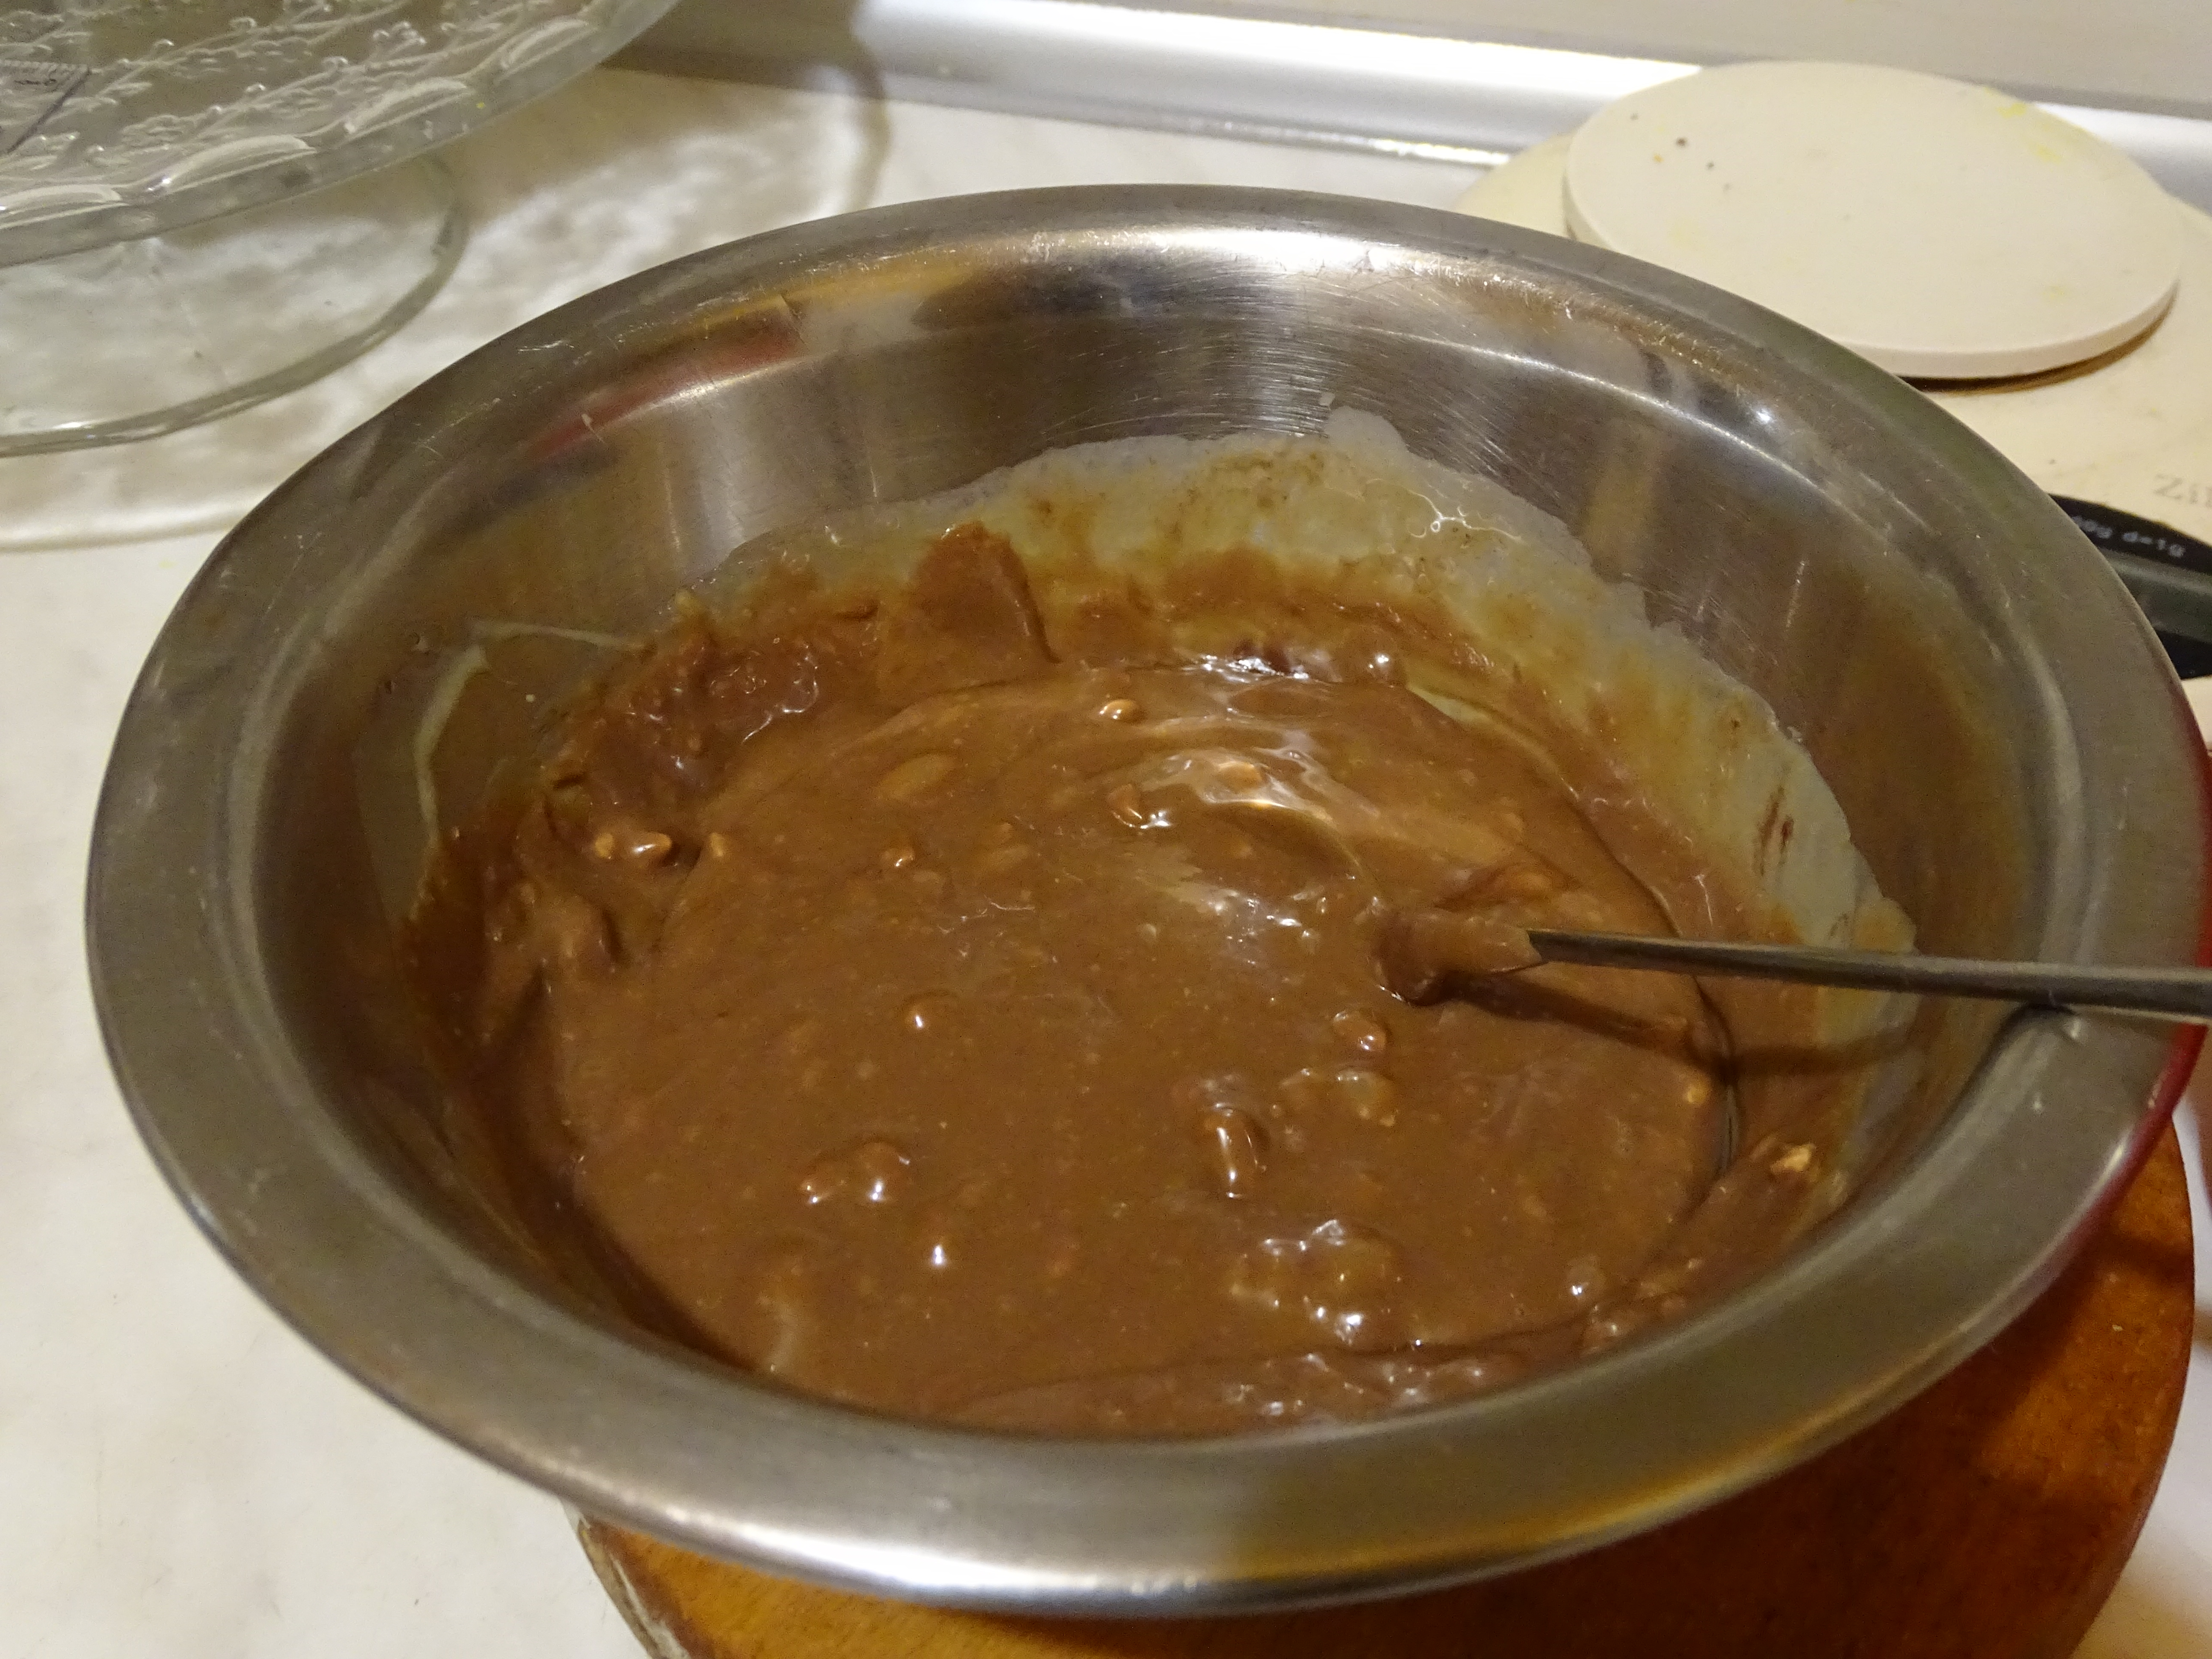 Desert tort cu crema de ciocolata si lapte condensat